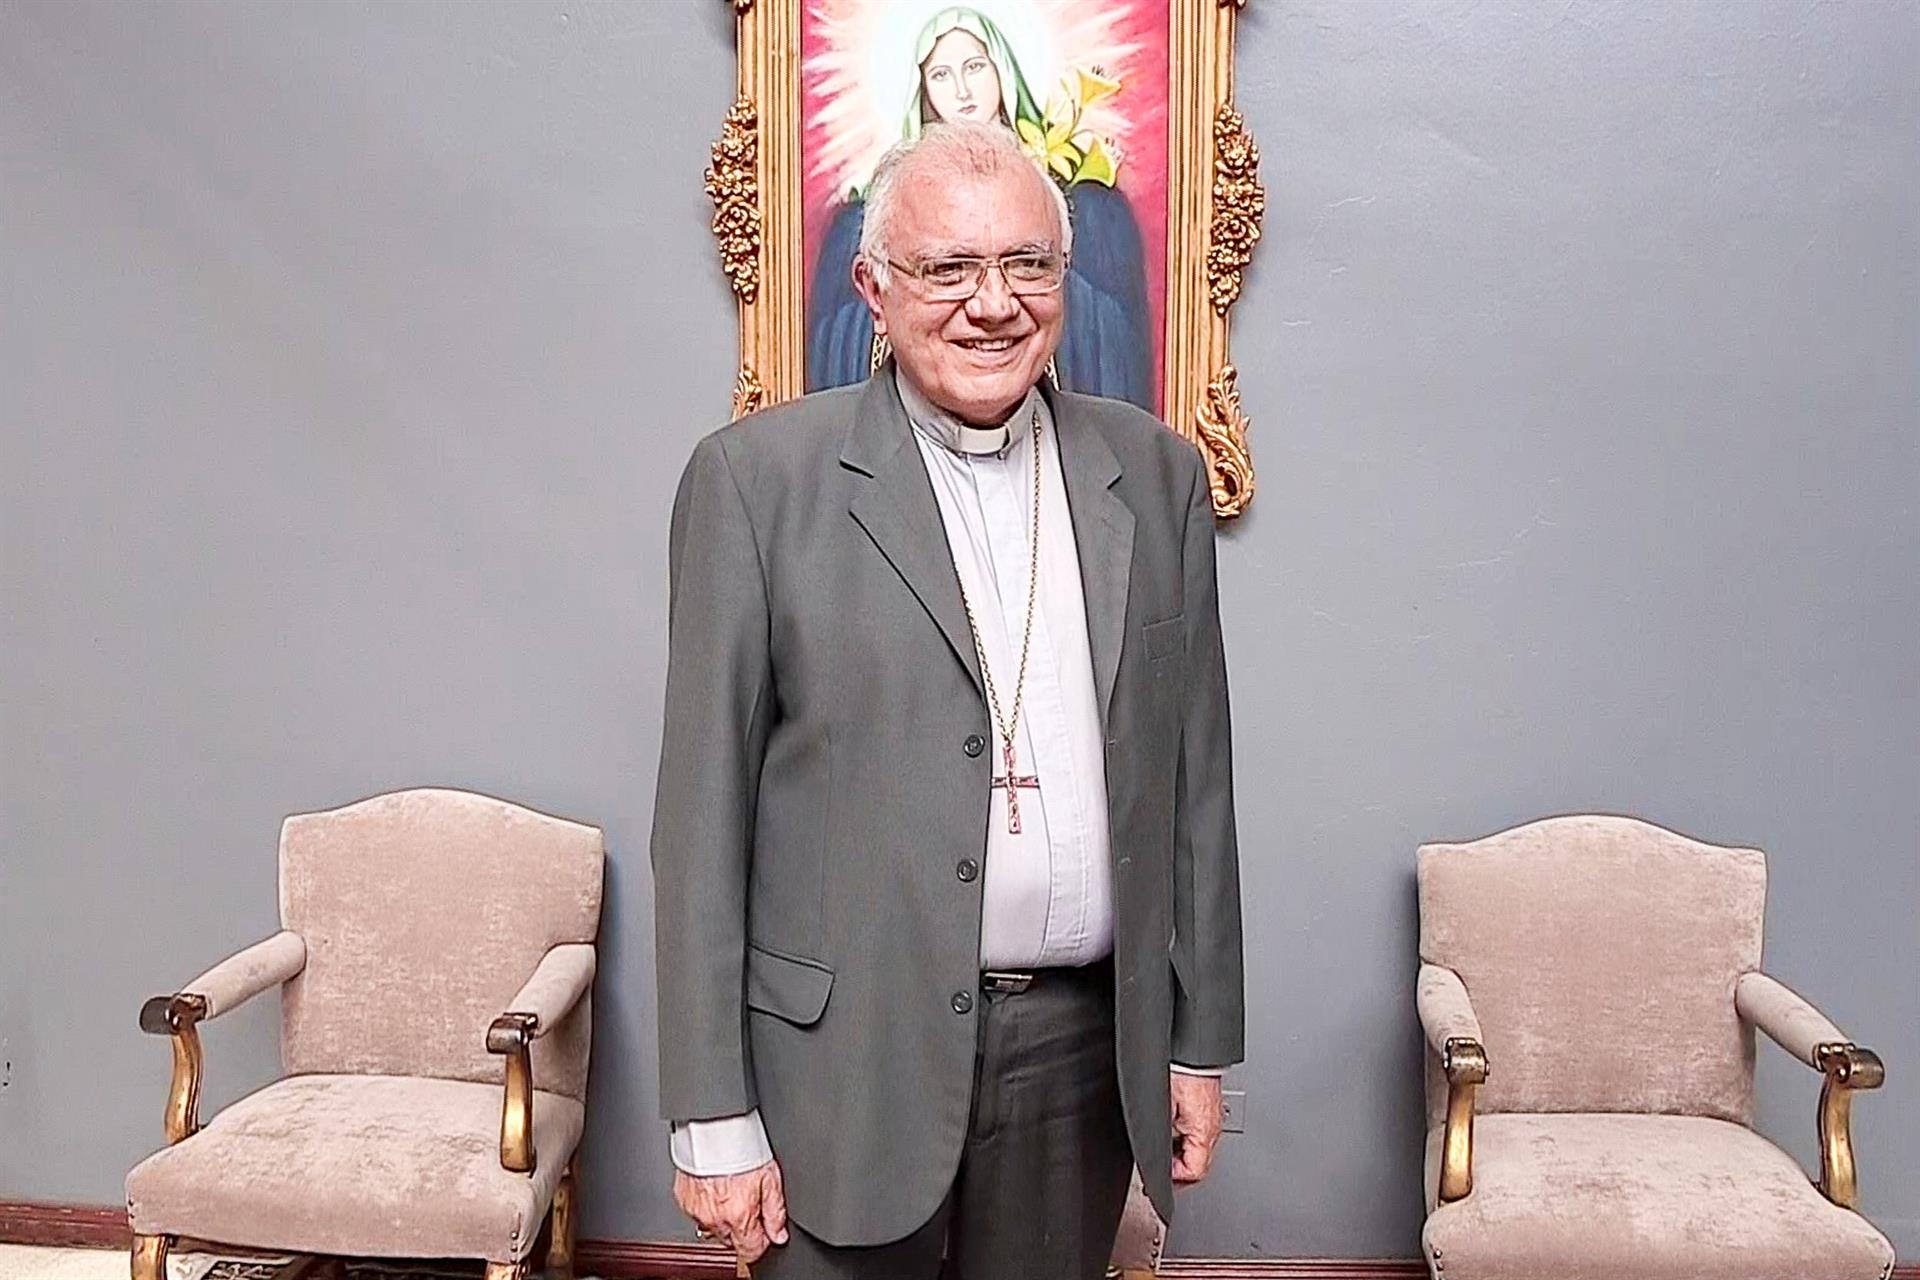 El mensaje del Cardenal Baltazar Porras con motivo del Día del Periodista en Venezuela (VIDEO)